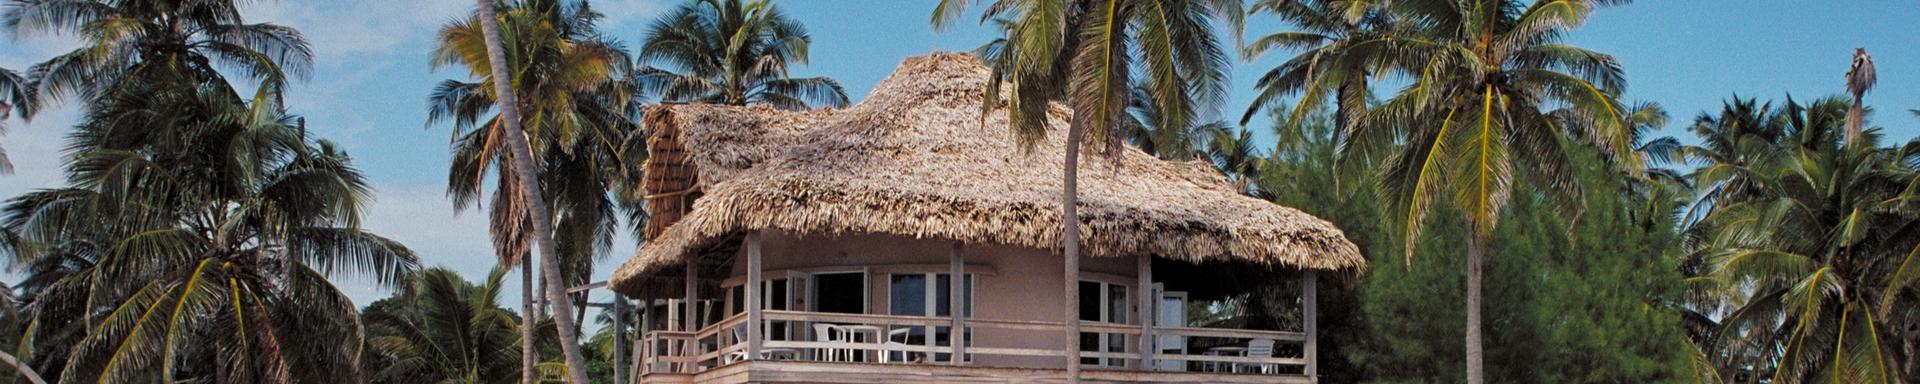 Xanadu Island Resort in Belize